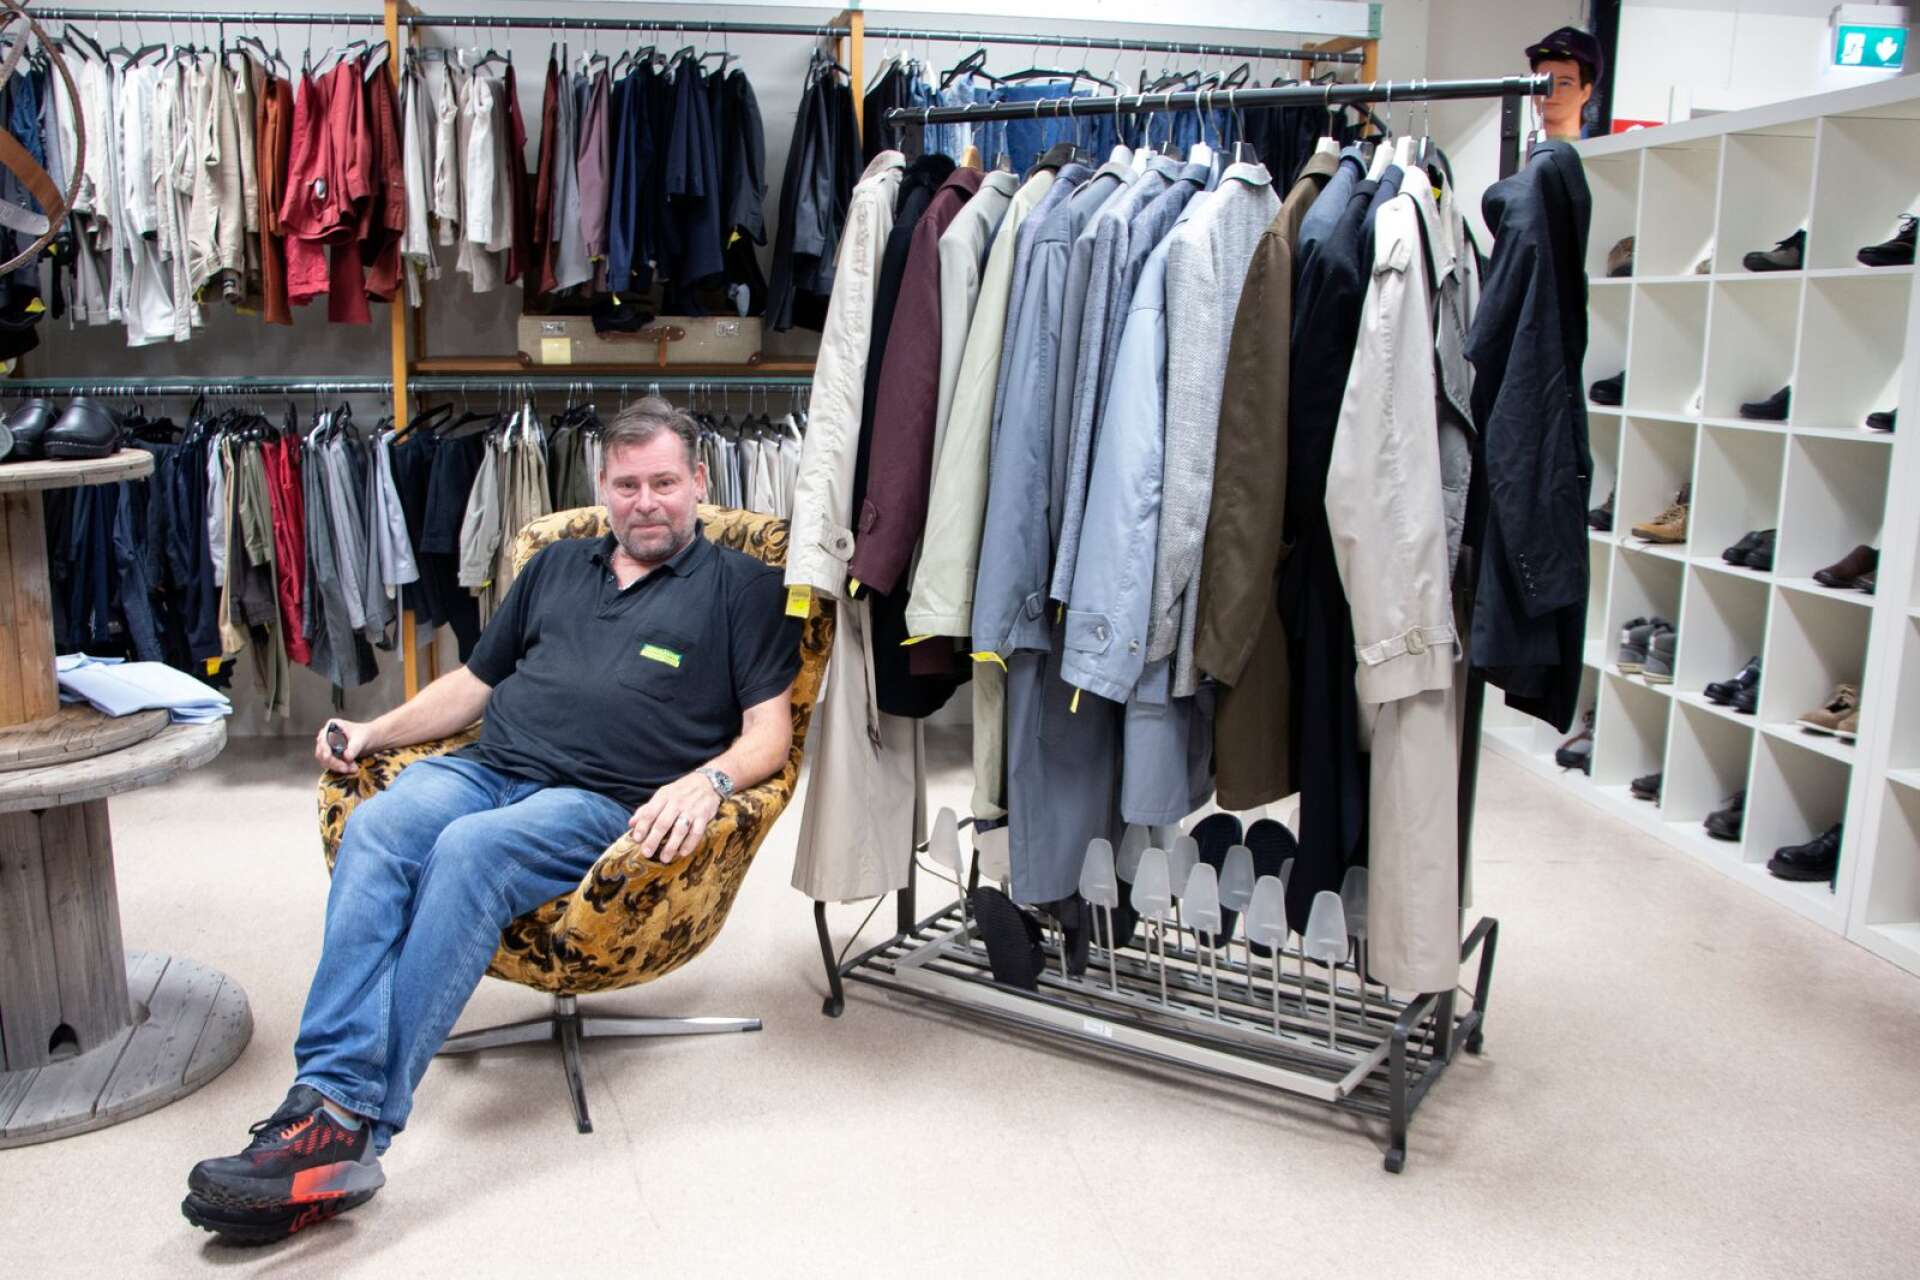 Bland hängarna på Gengåvans klädavdelning är det många som letar fynd. Stolen som verksamhetschefen Ulf Skogsberg sitter i är dock inte till salu – den frågan får han ofta.